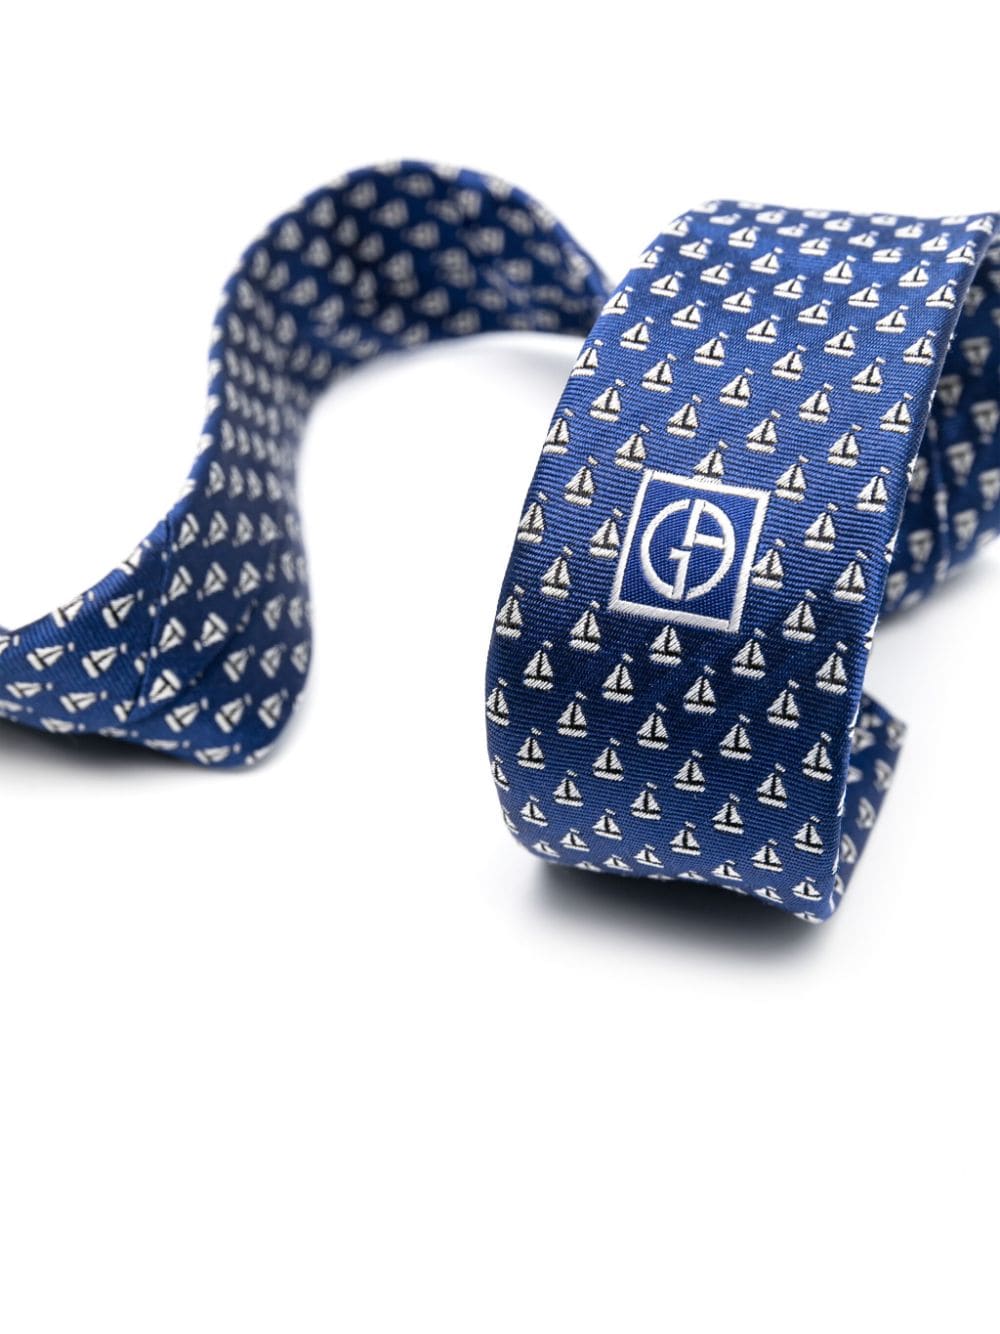 Giorgio Armani boat-patterned silk tie - Blauw